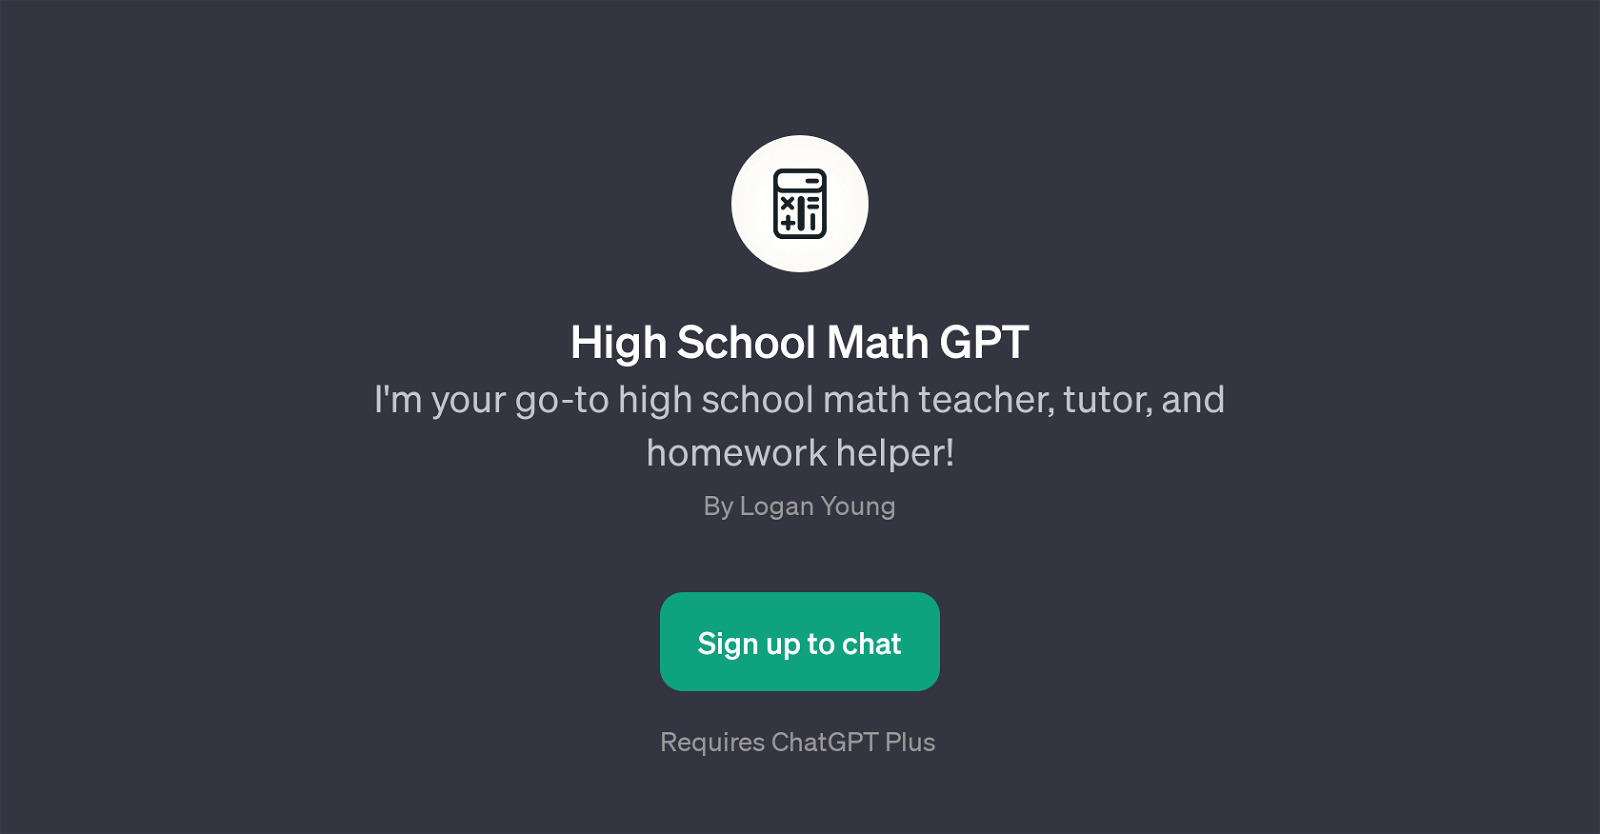 High School Math GPT website